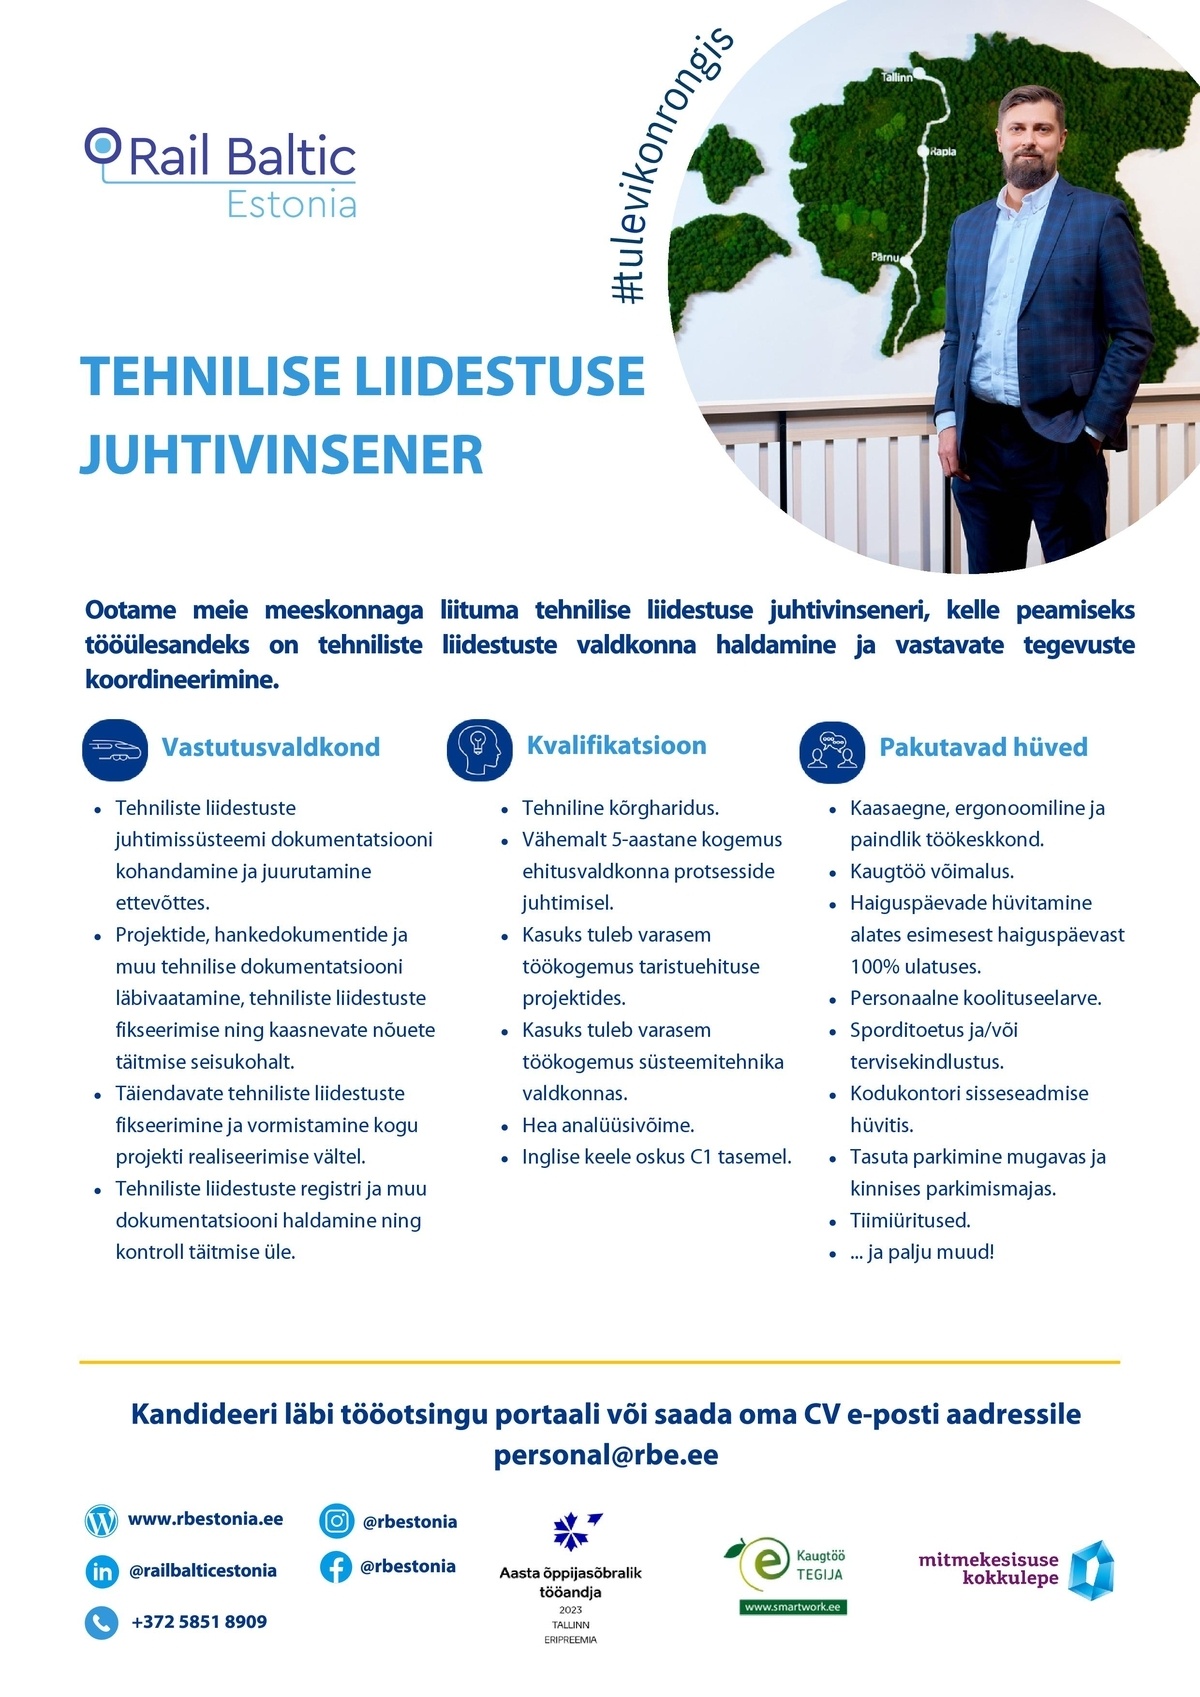 Rail Baltic Estonia OÜ Tehnilise liidestuse juhtivinsener